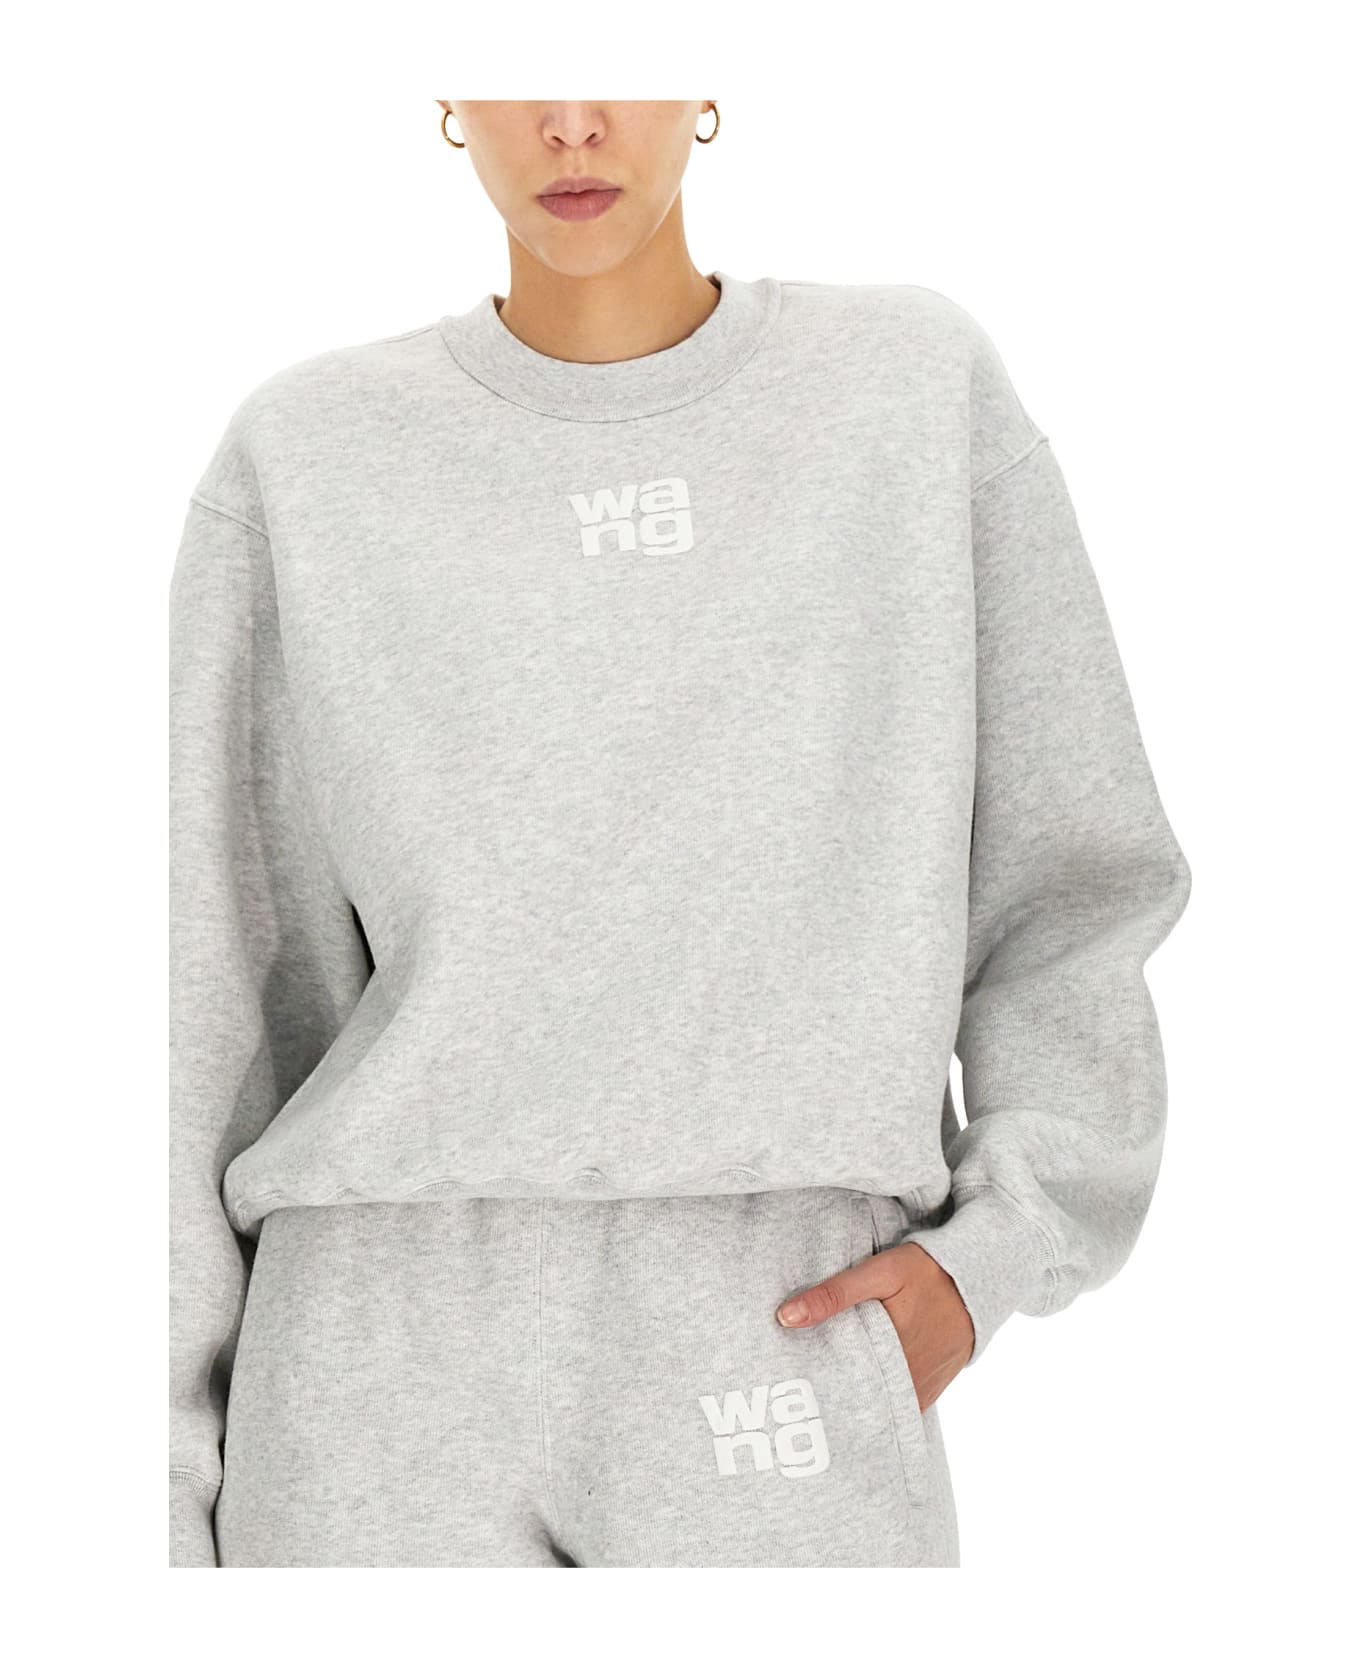 Alexander Wang Sweatshirt With Embossed Logo - Light Heather Grey